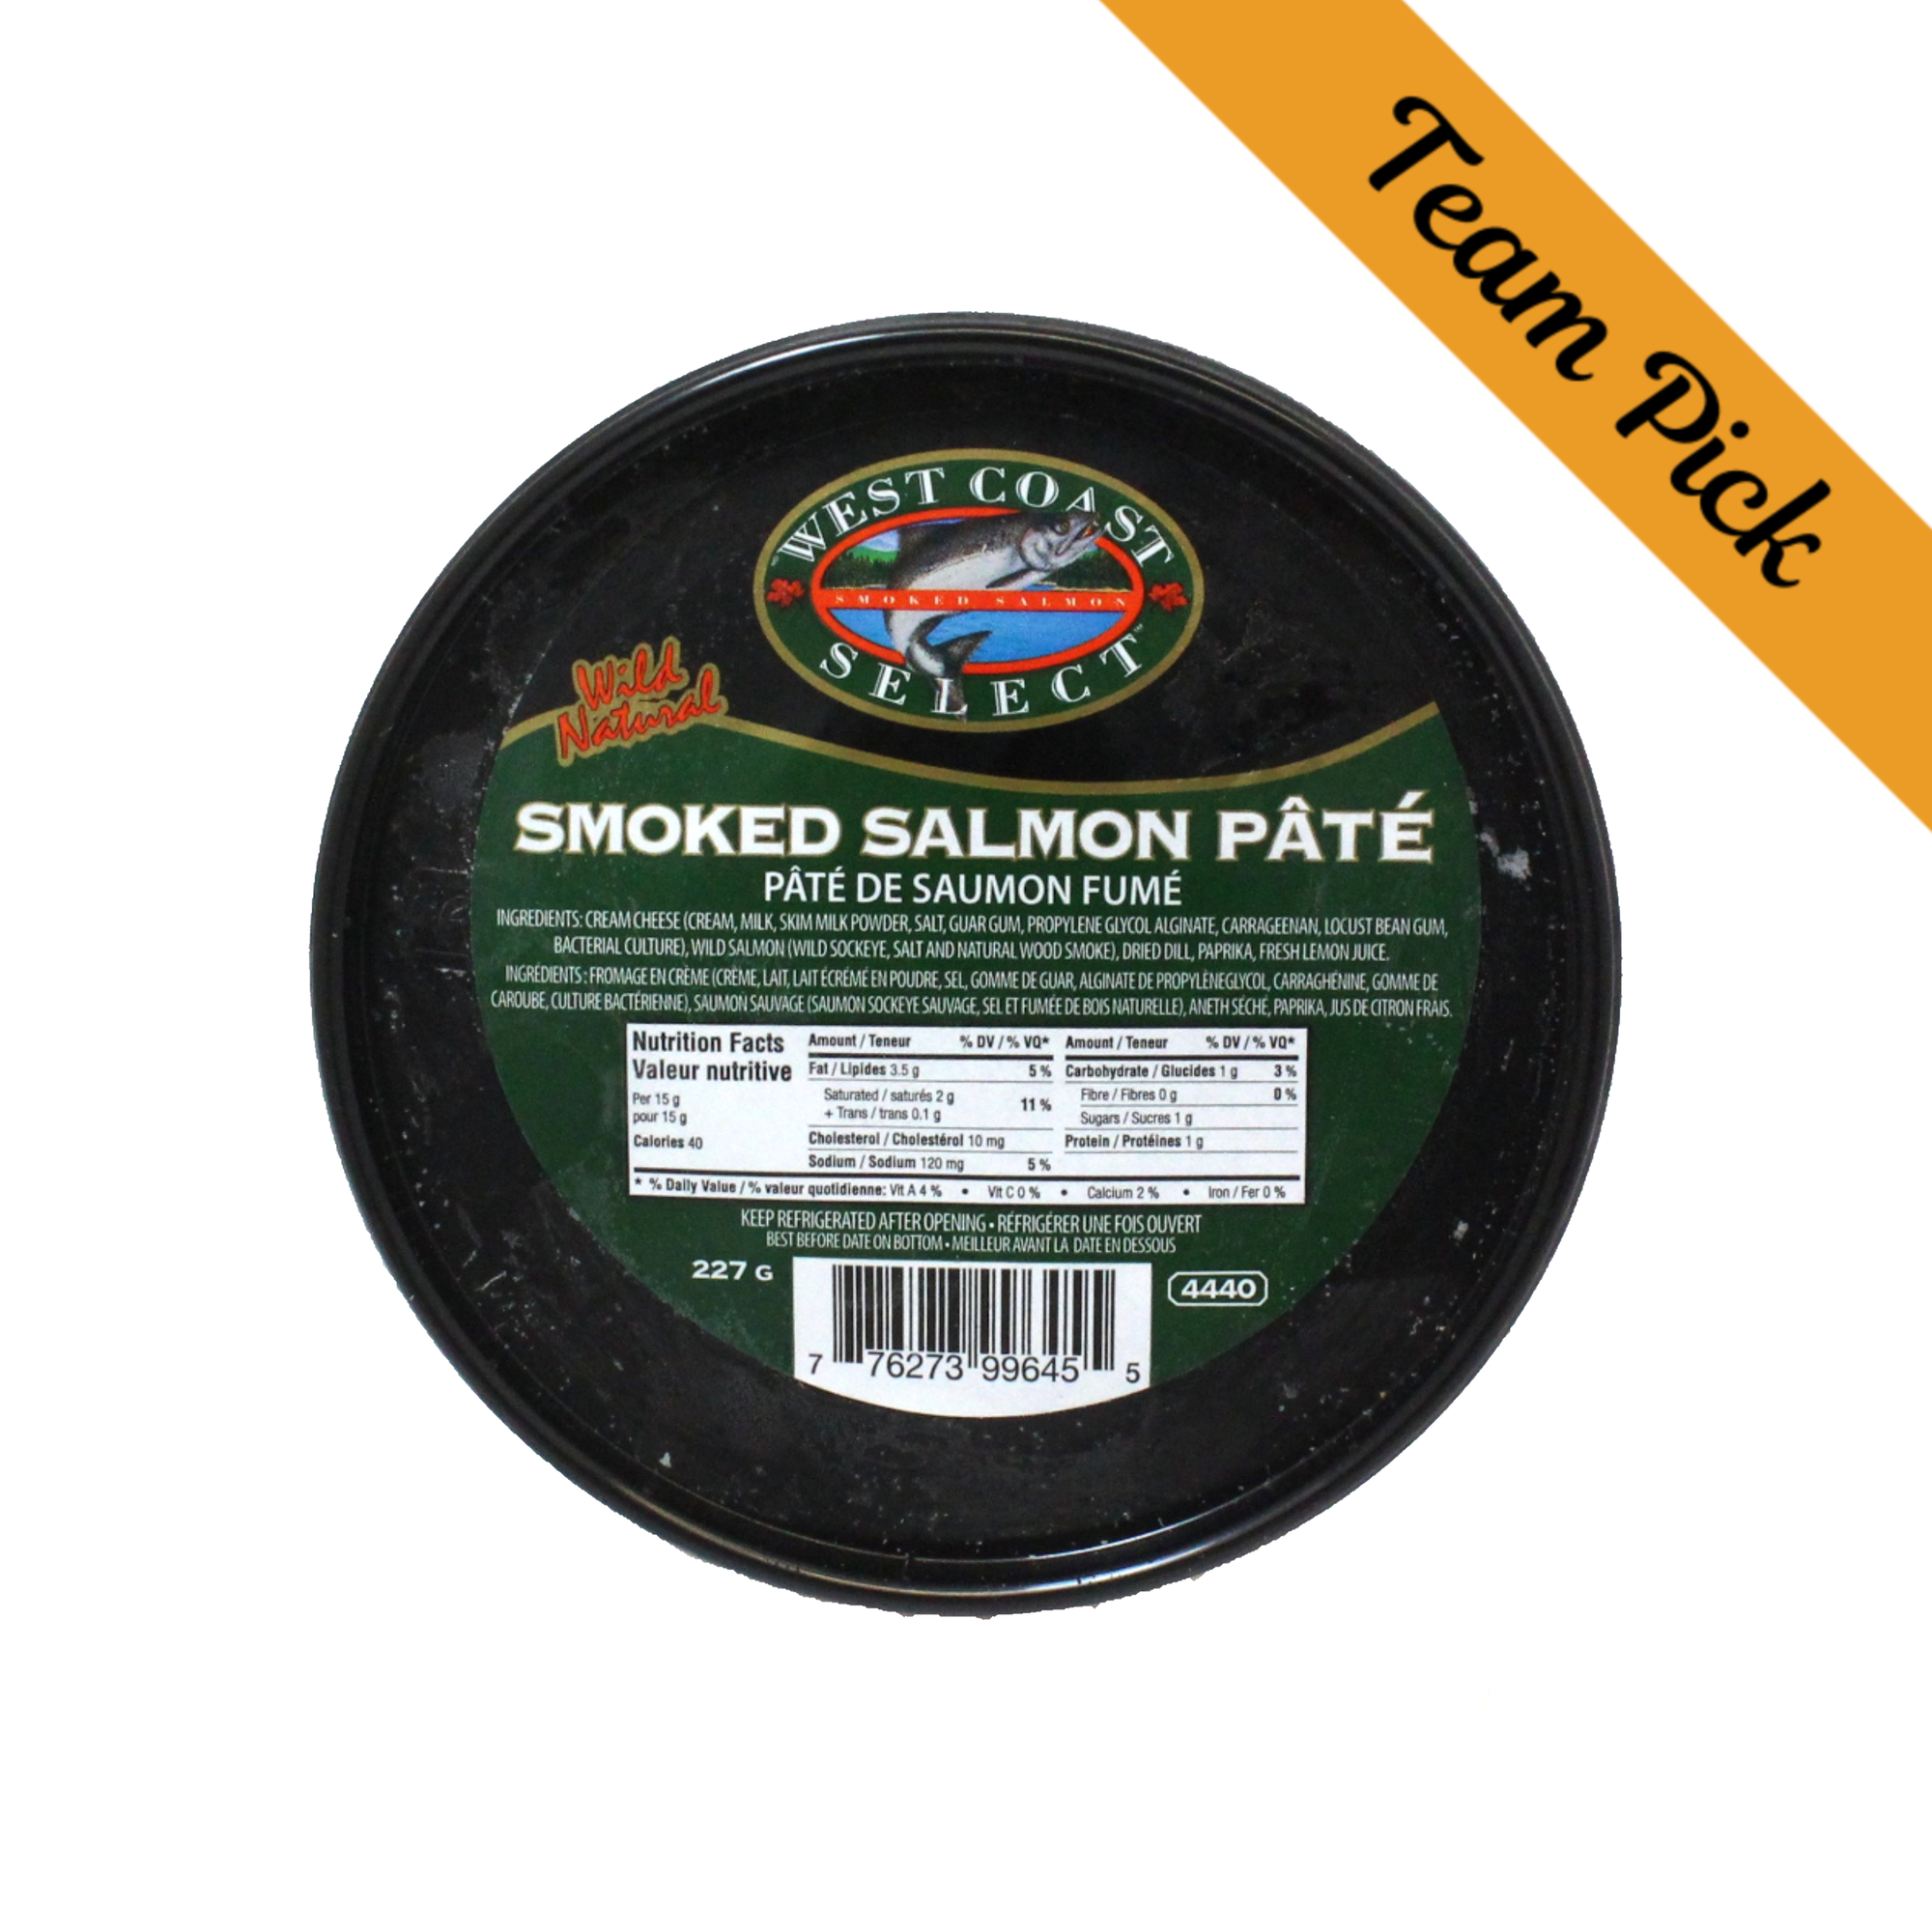 West Coast Select Smoked Salmon Pate